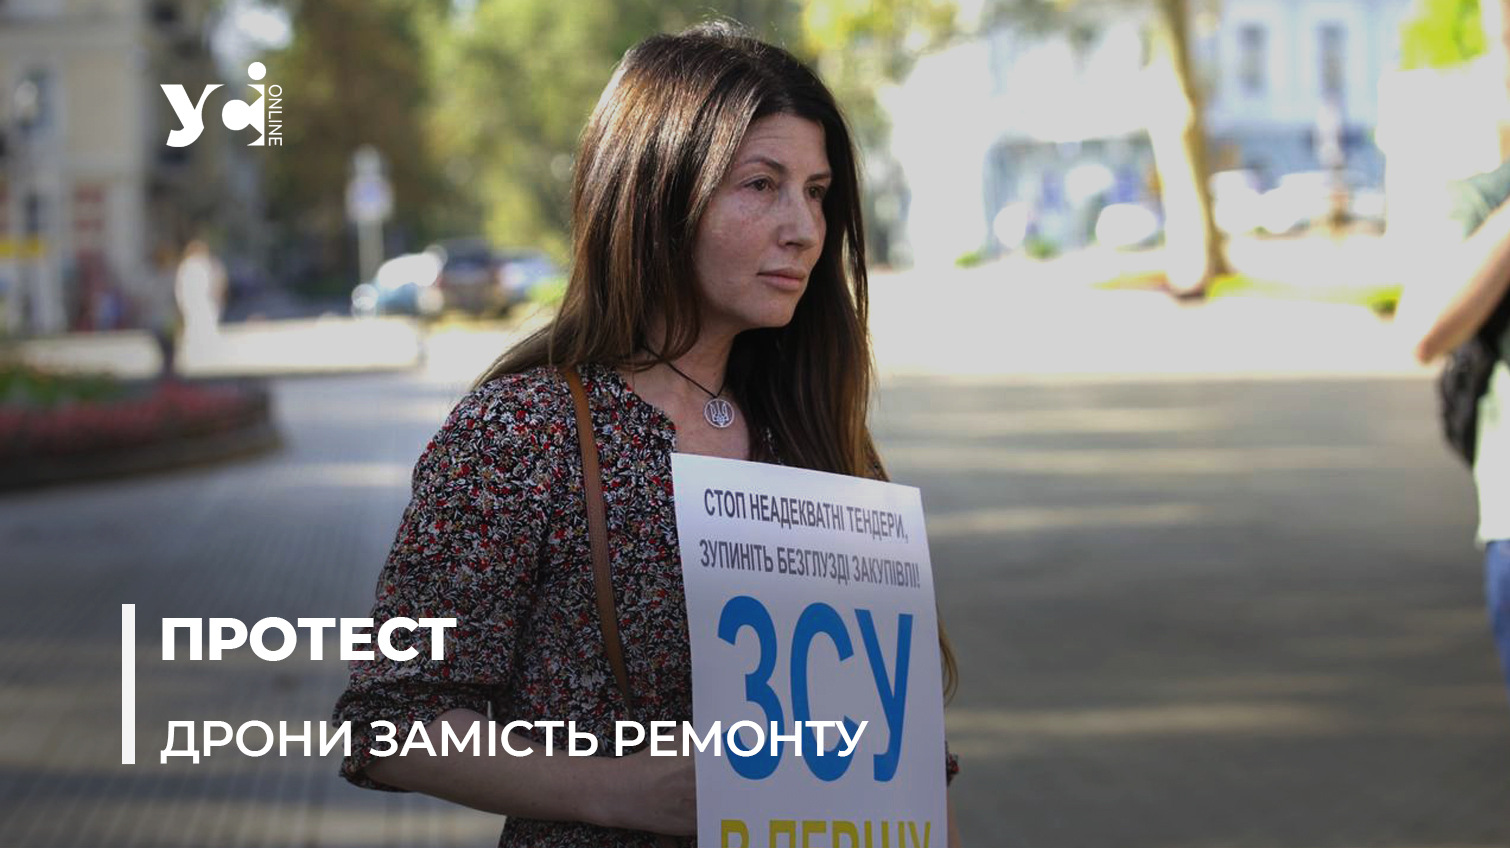 Найвідоміша одеська волонтерка організувала протест під мерією: у чому справа (фото) «фото»